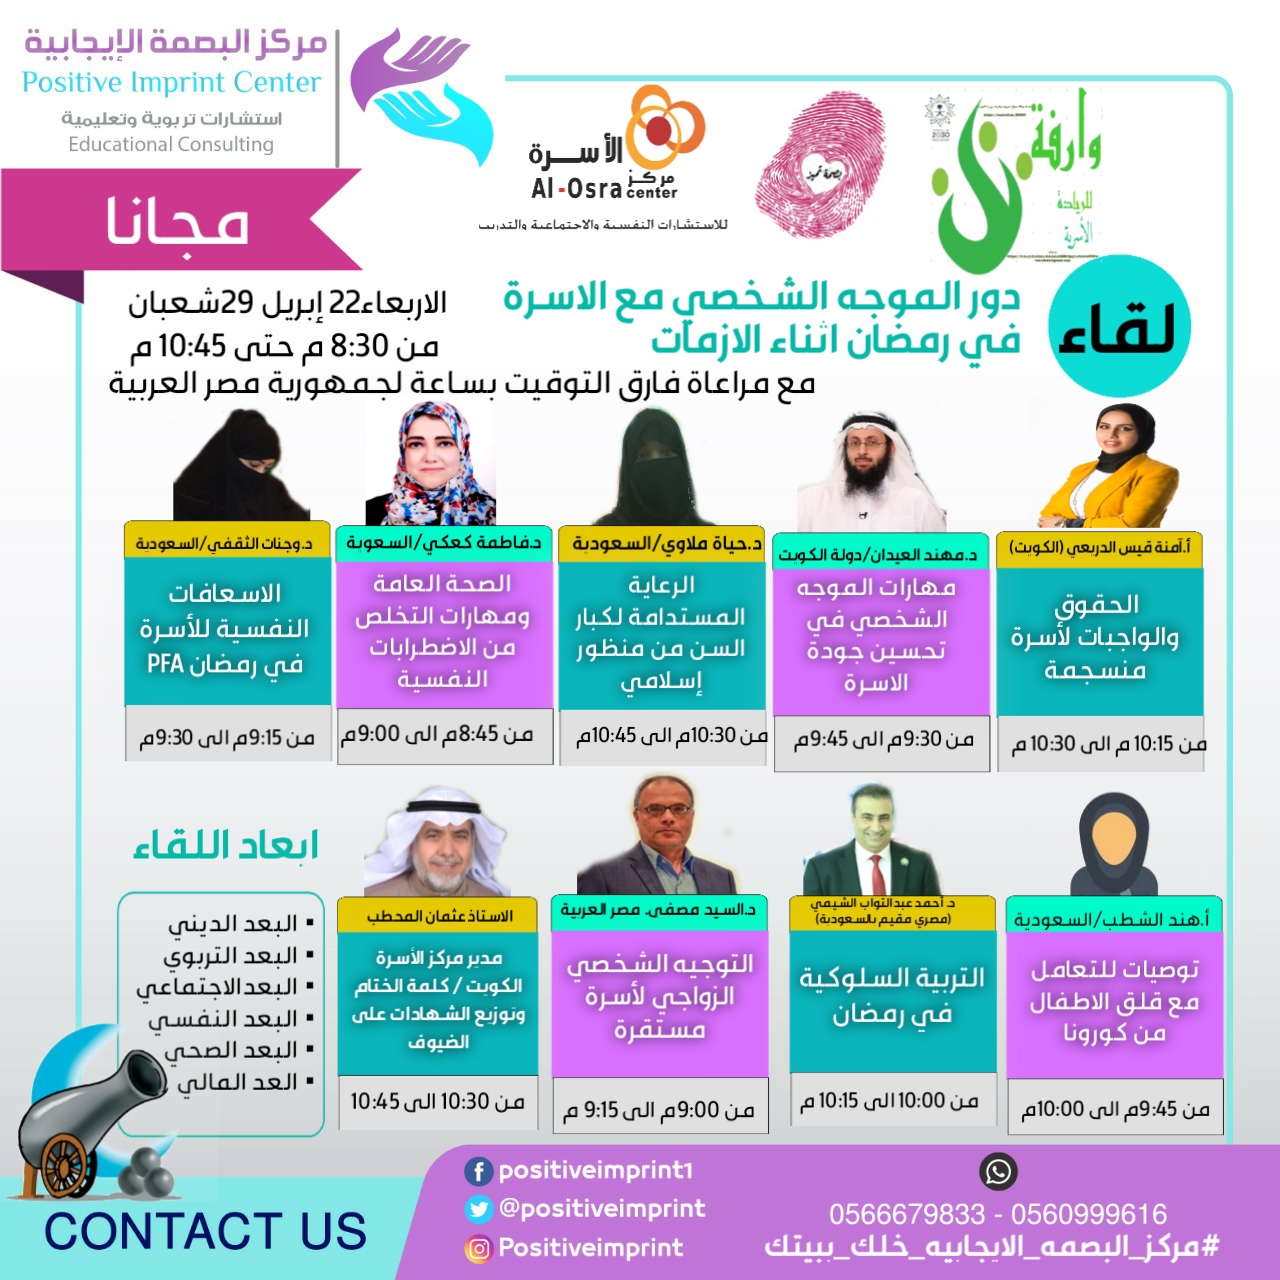 منتدى إفتراضي لأكبر مبادرة على مستوى العالم العربي “خليك في البيت”